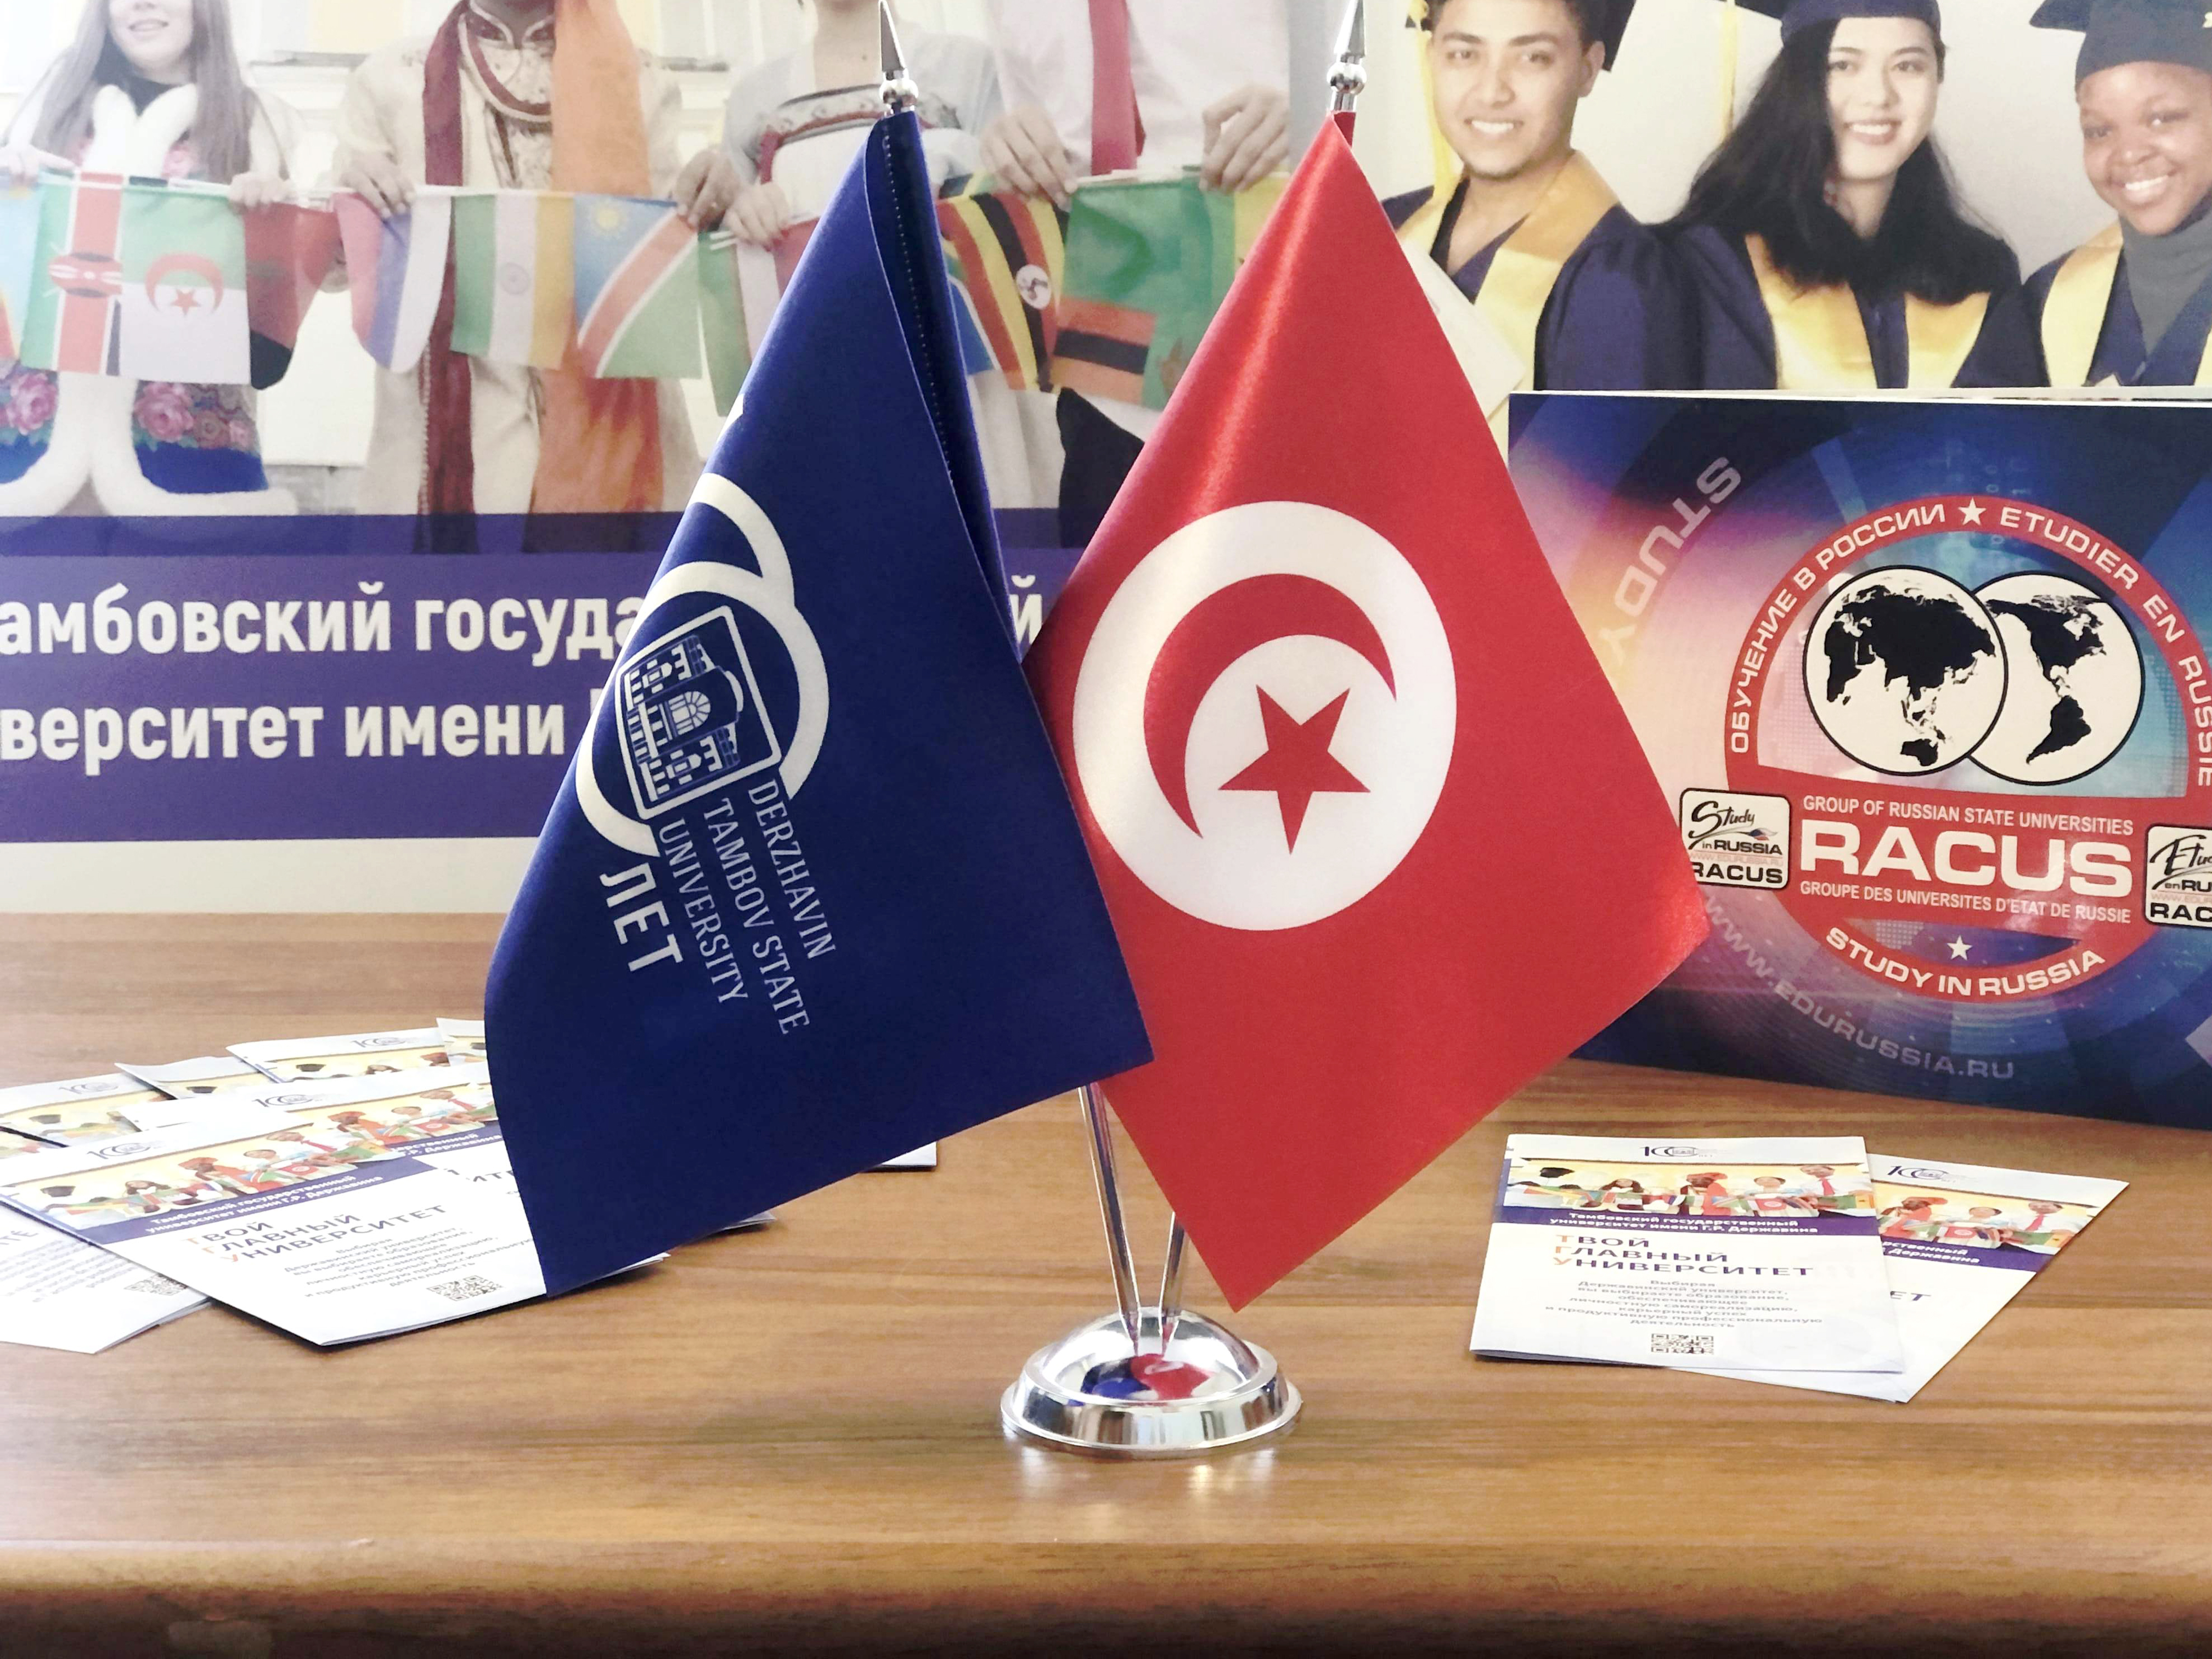 Державинский принял участие в международных образовательных выставках в Тунисе фото анонса